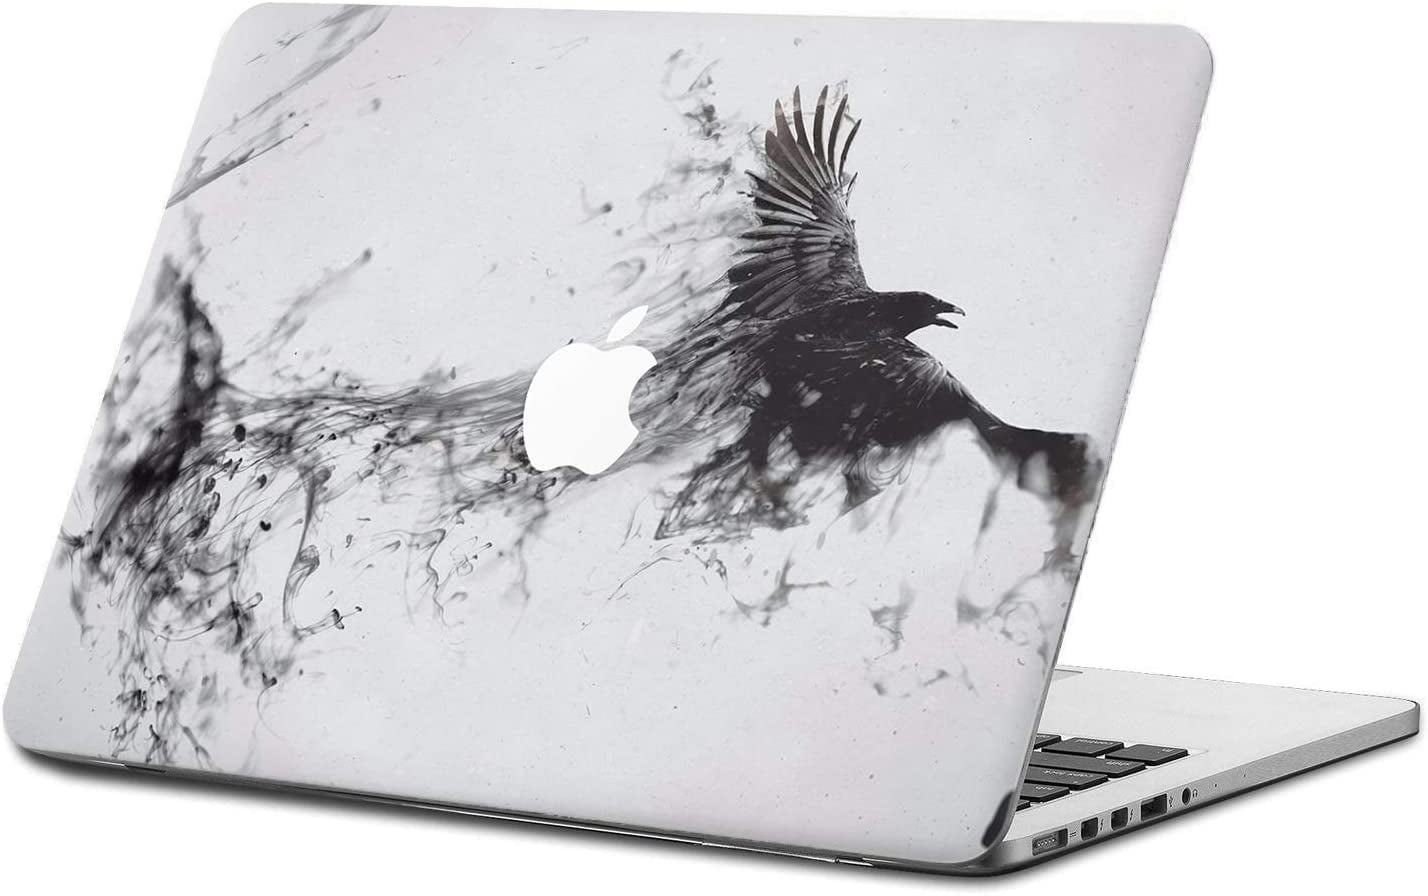 12 Inch Model A1534, Pattern B DowBier MacBook Decal Vinyl PVC Transparent Skin Sticker Cover Anti-Scratch Skin 